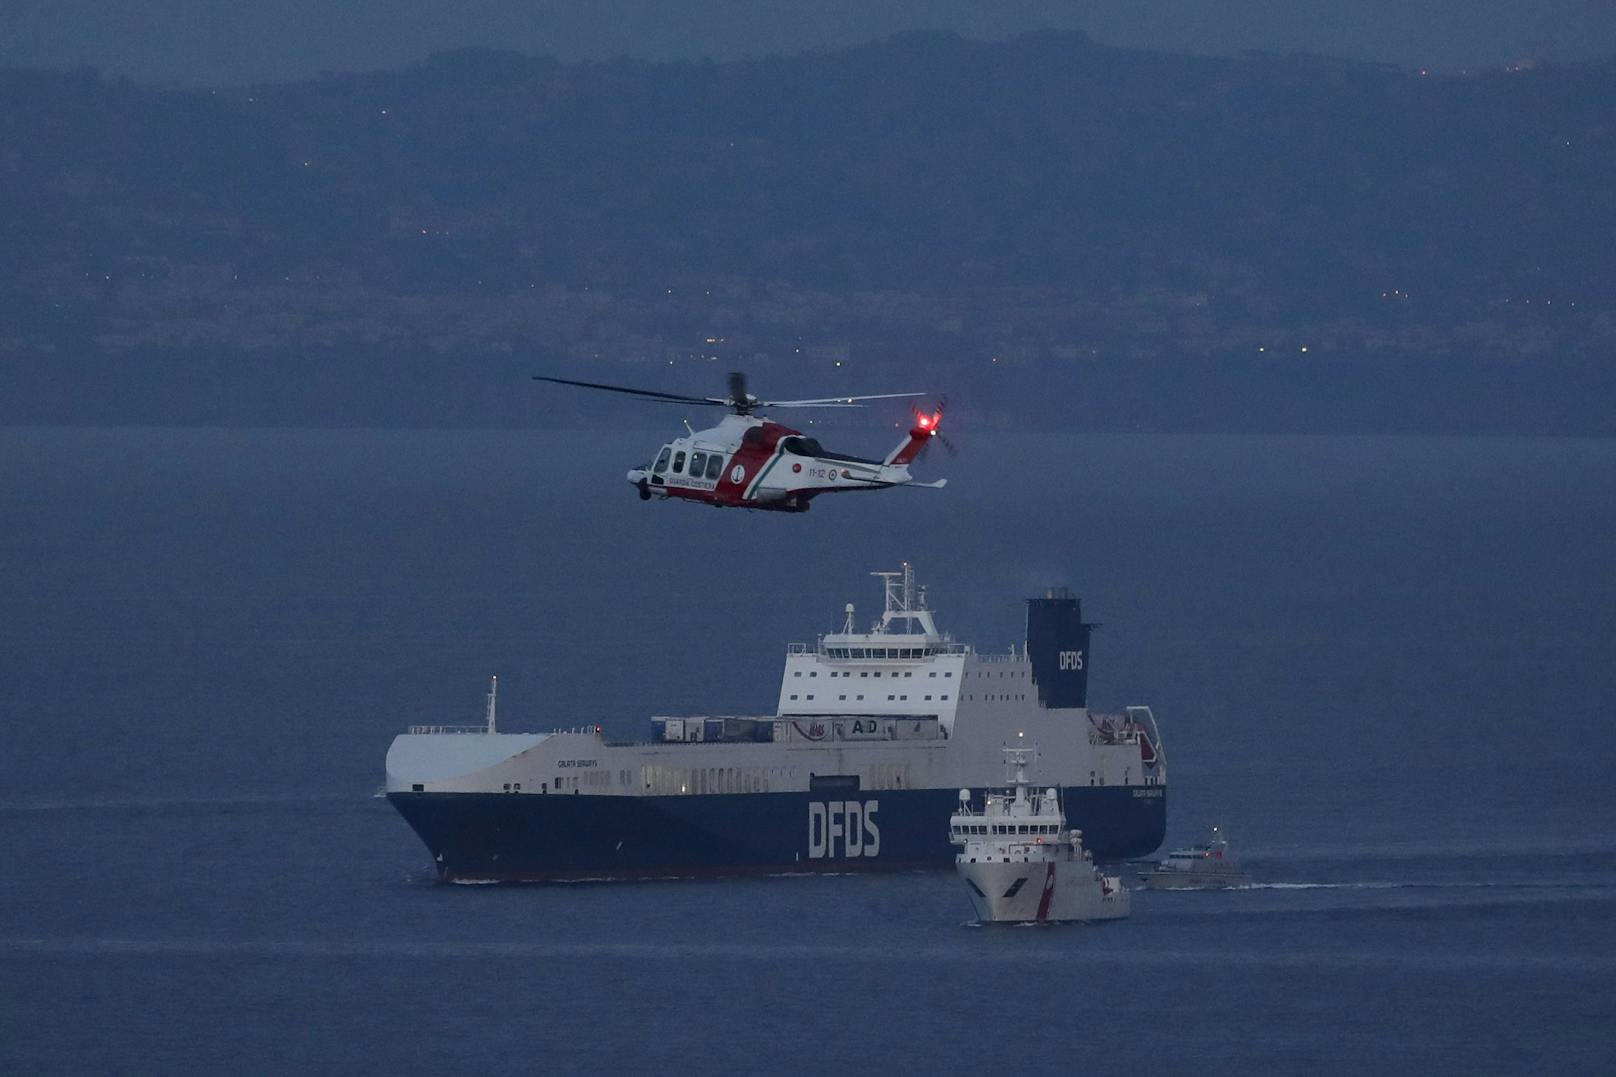 Migranten kapern Schiff und ändern Kurs vor Italien